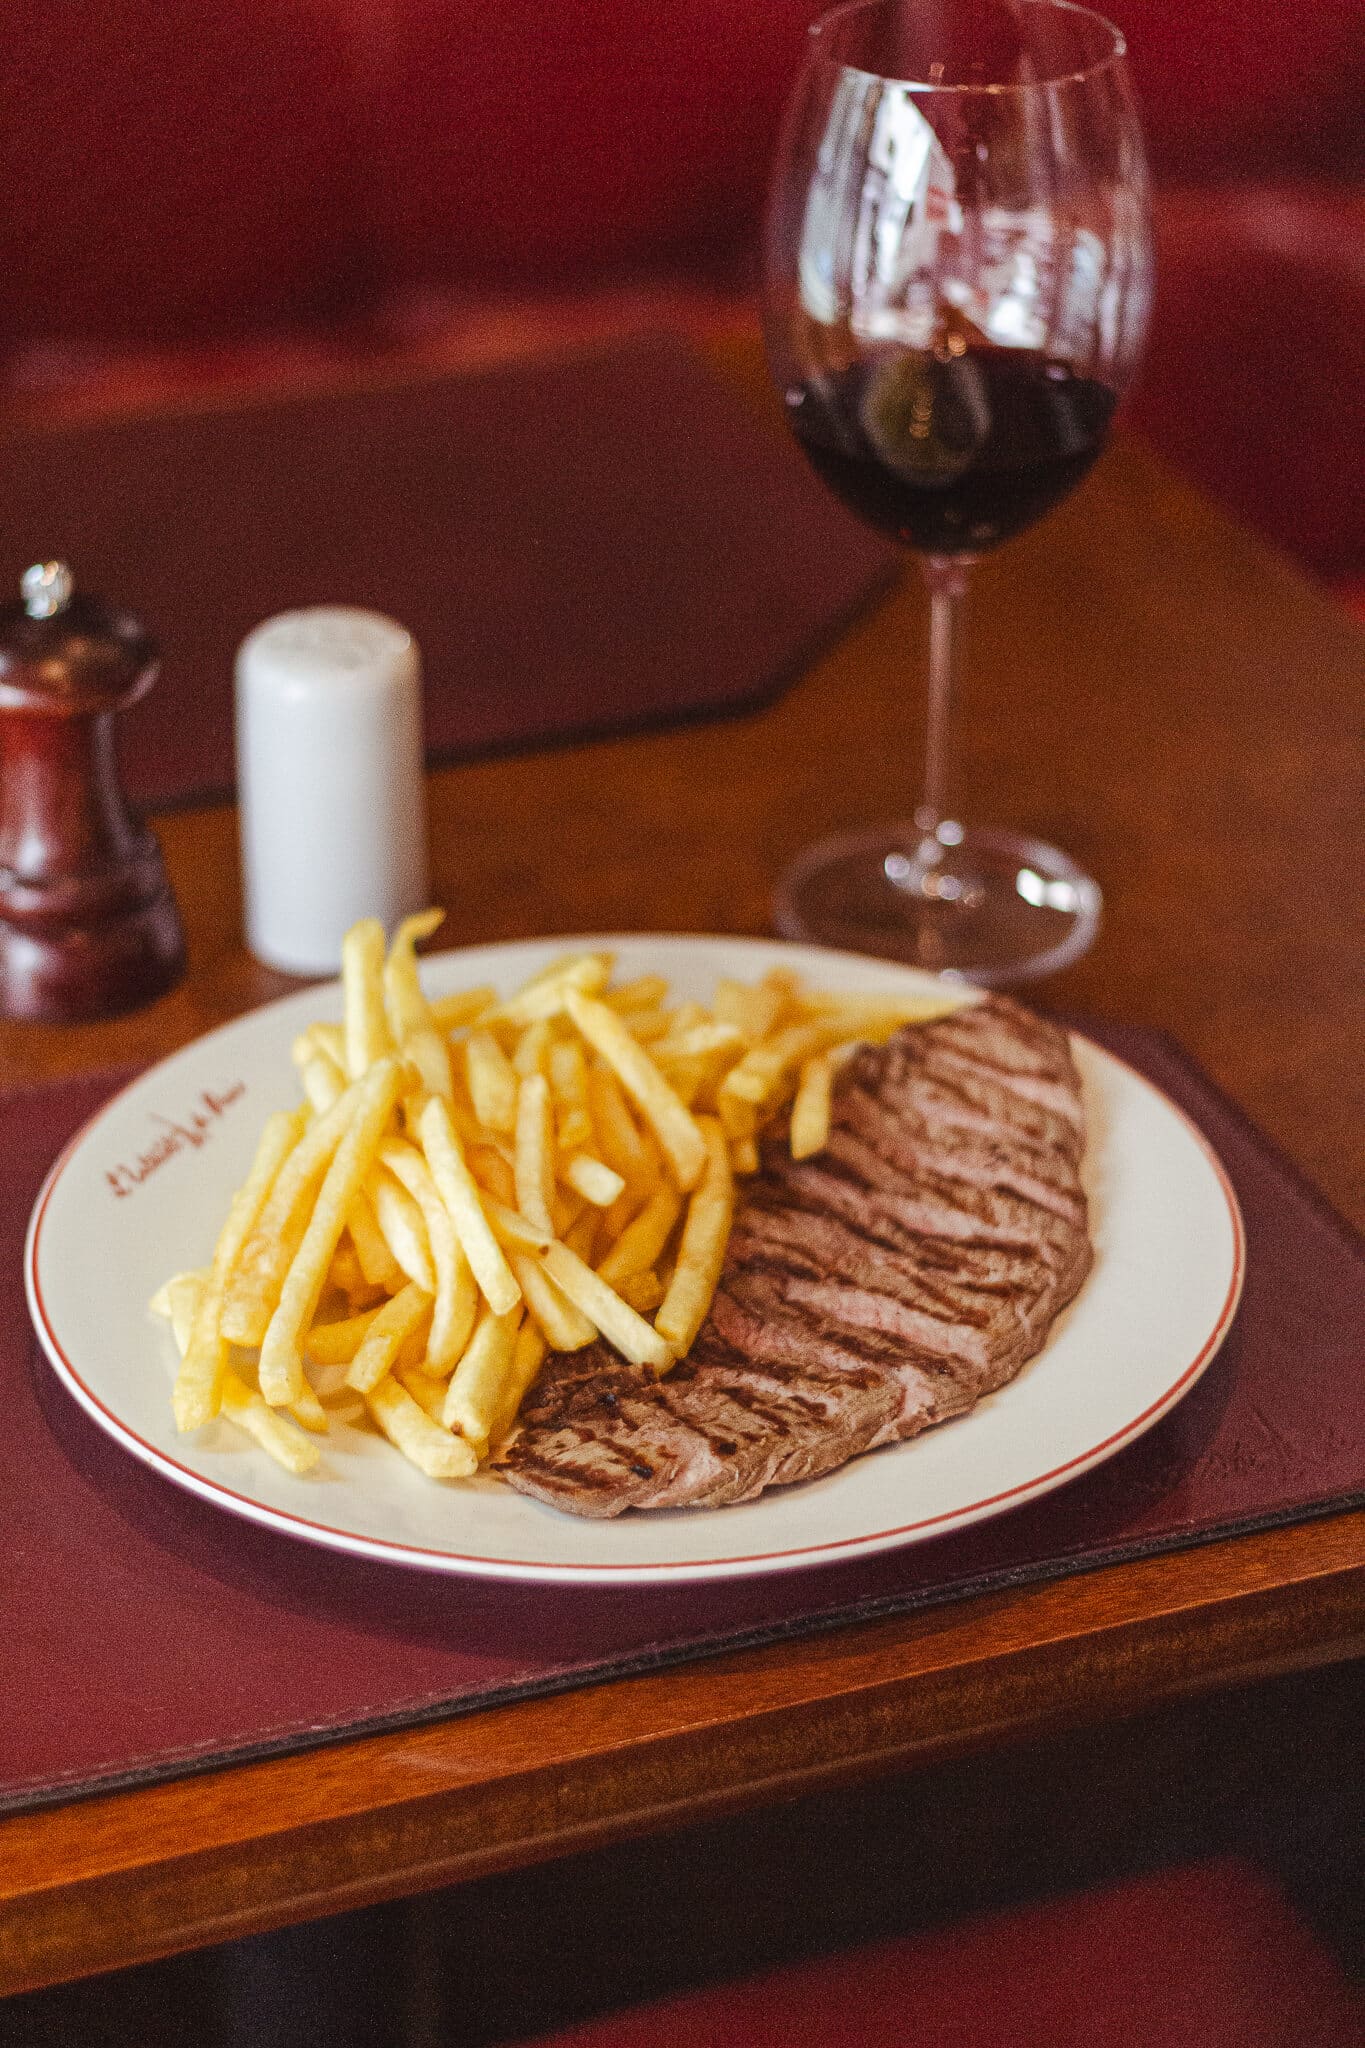 foto mostra um entrecote no prato ao lado de batatas fritas e uma taça de vinho